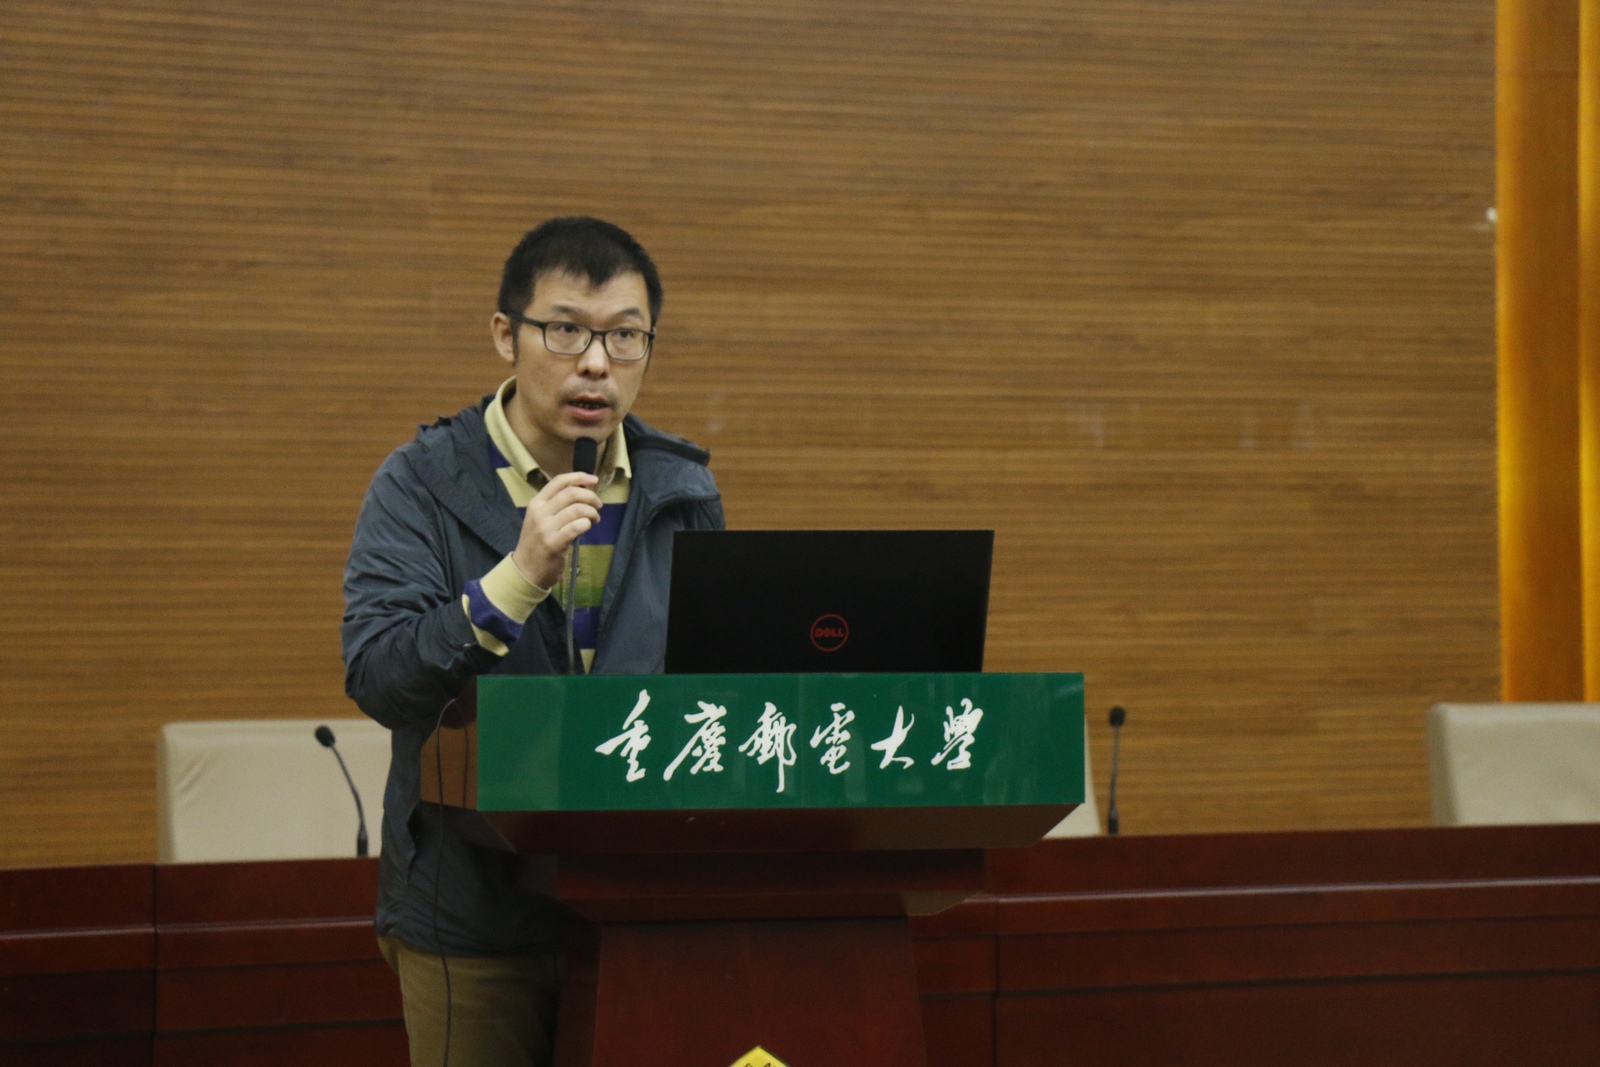 9 上海大学岳晓东副教授作题为《基于邻域的不确定性学习：模型与应用》特邀报告.jpg